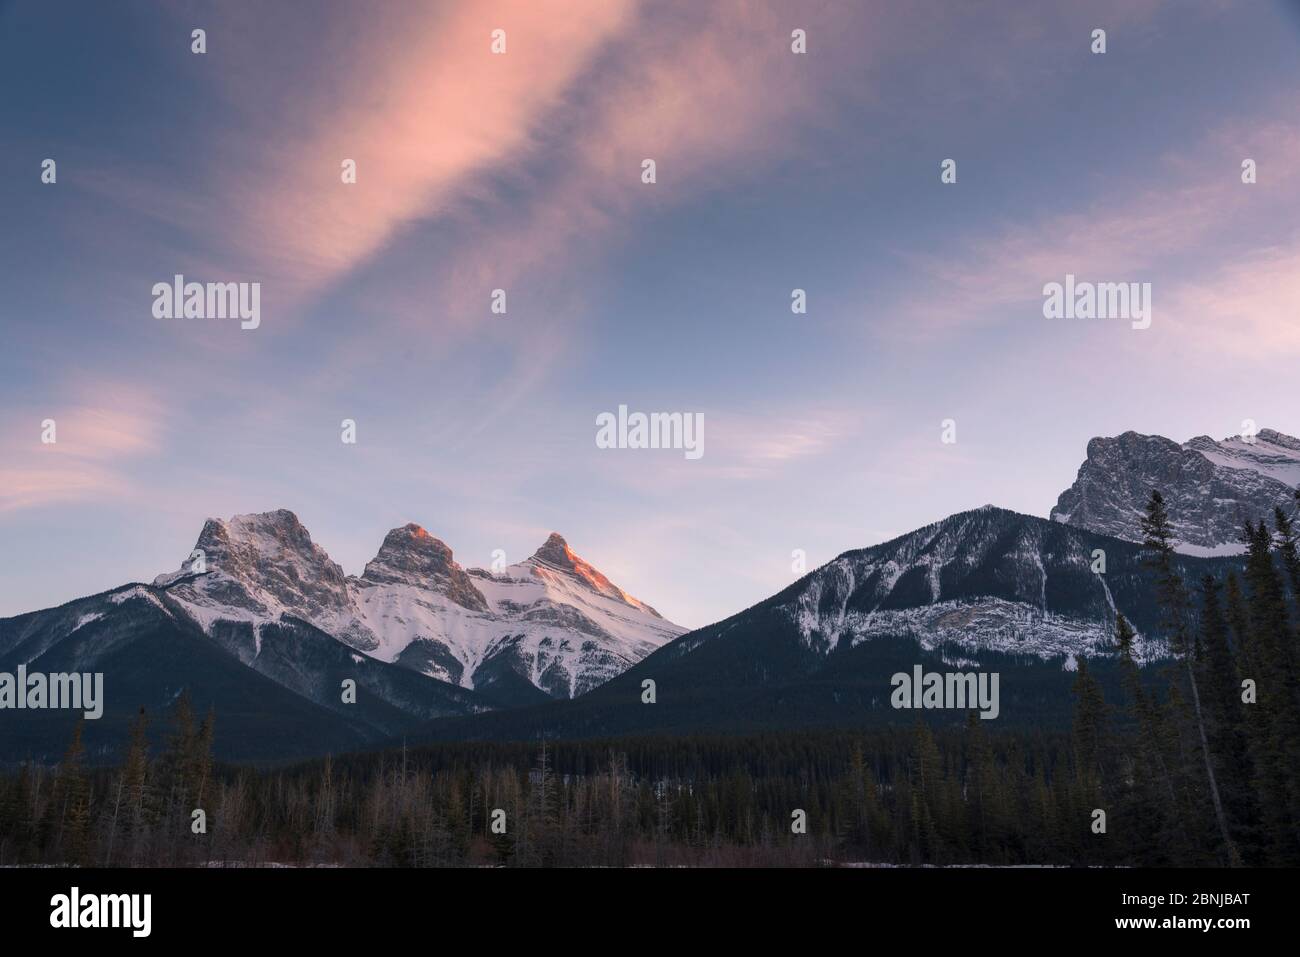 Lumière du soir sur les sommets des trois Sœurs près du parc national Banff, Canmore, Alberta, Rocheuses canadiennes, Canada, Amérique du Nord Banque D'Images